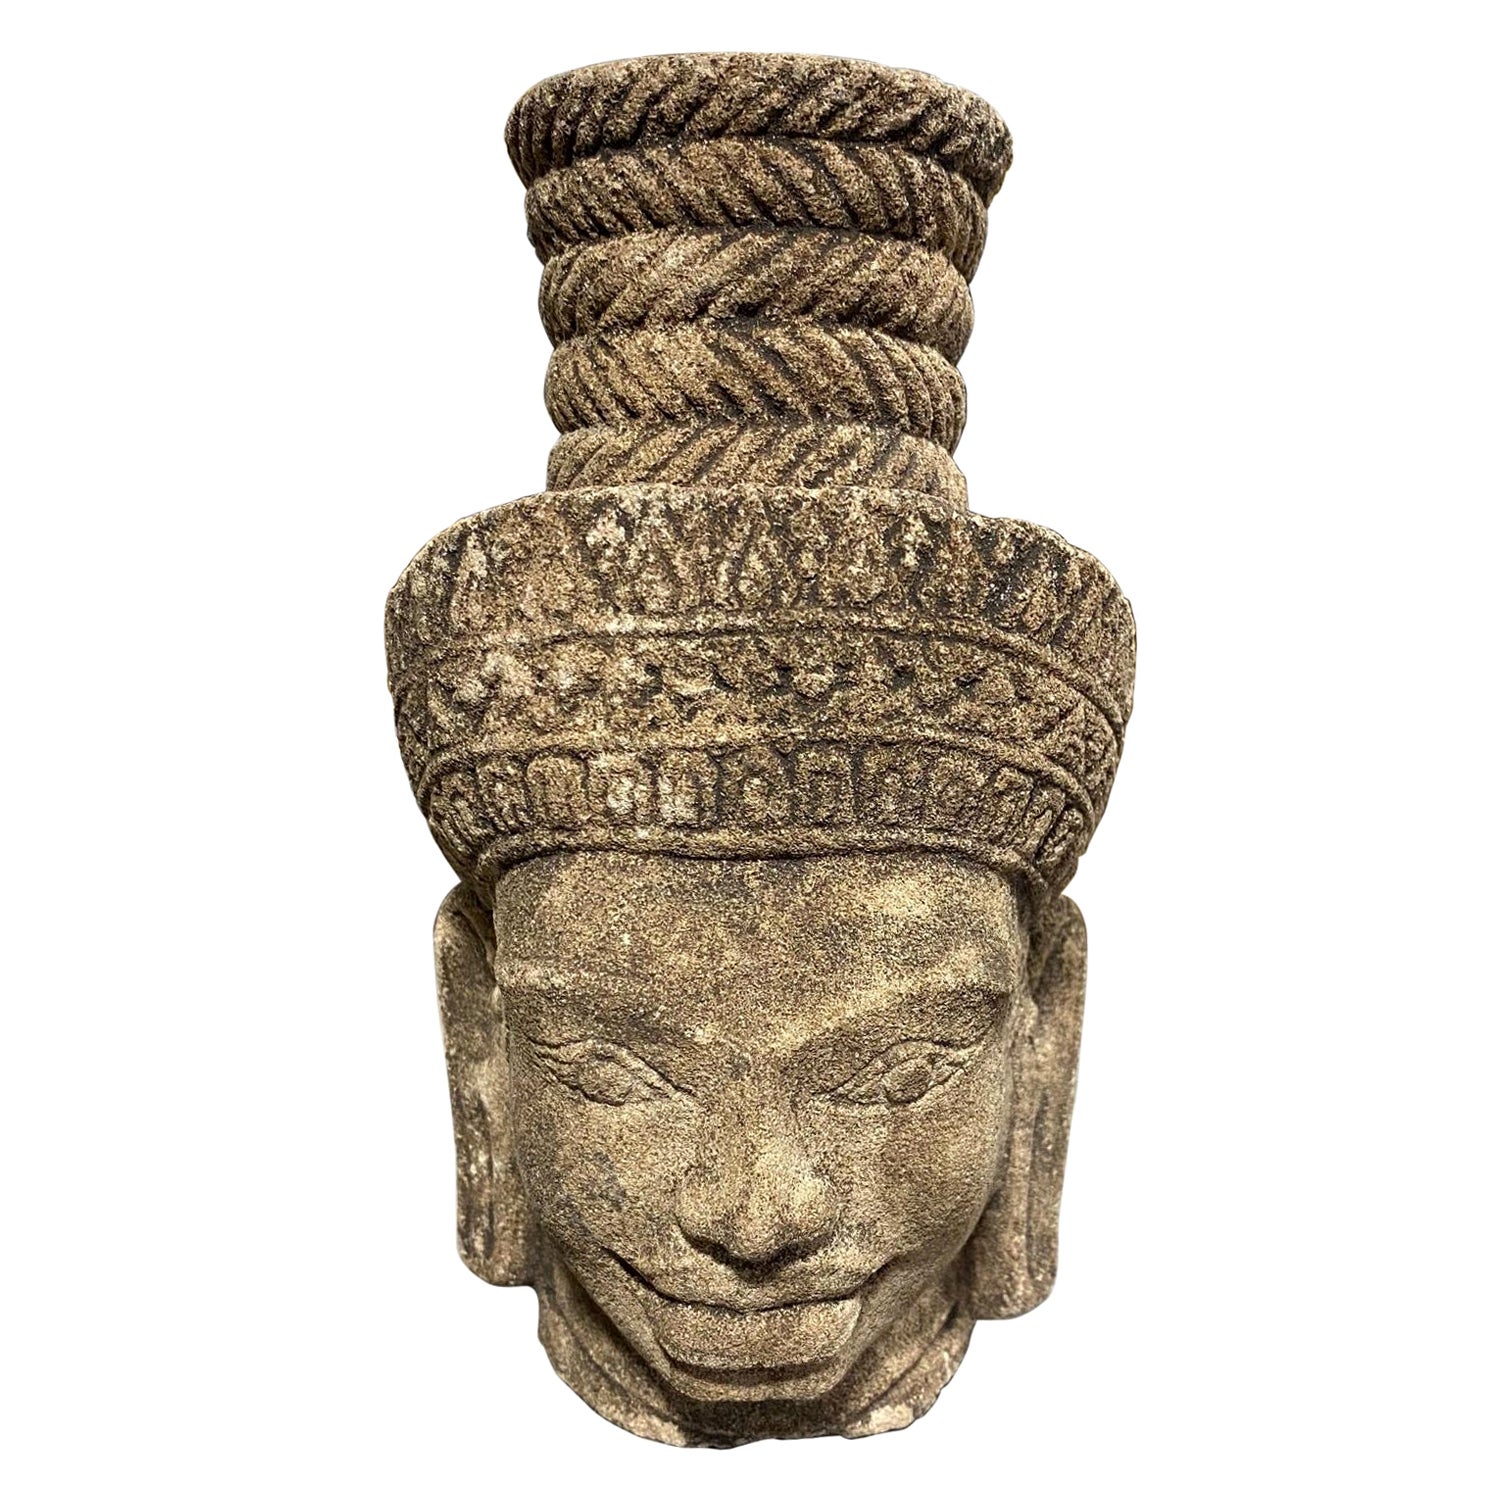 Asiatische asiatische Khmer- Kambodscha, geschnitzte Kopfbüste eines männlichen buddhistischen Buddha Shiva-Deity